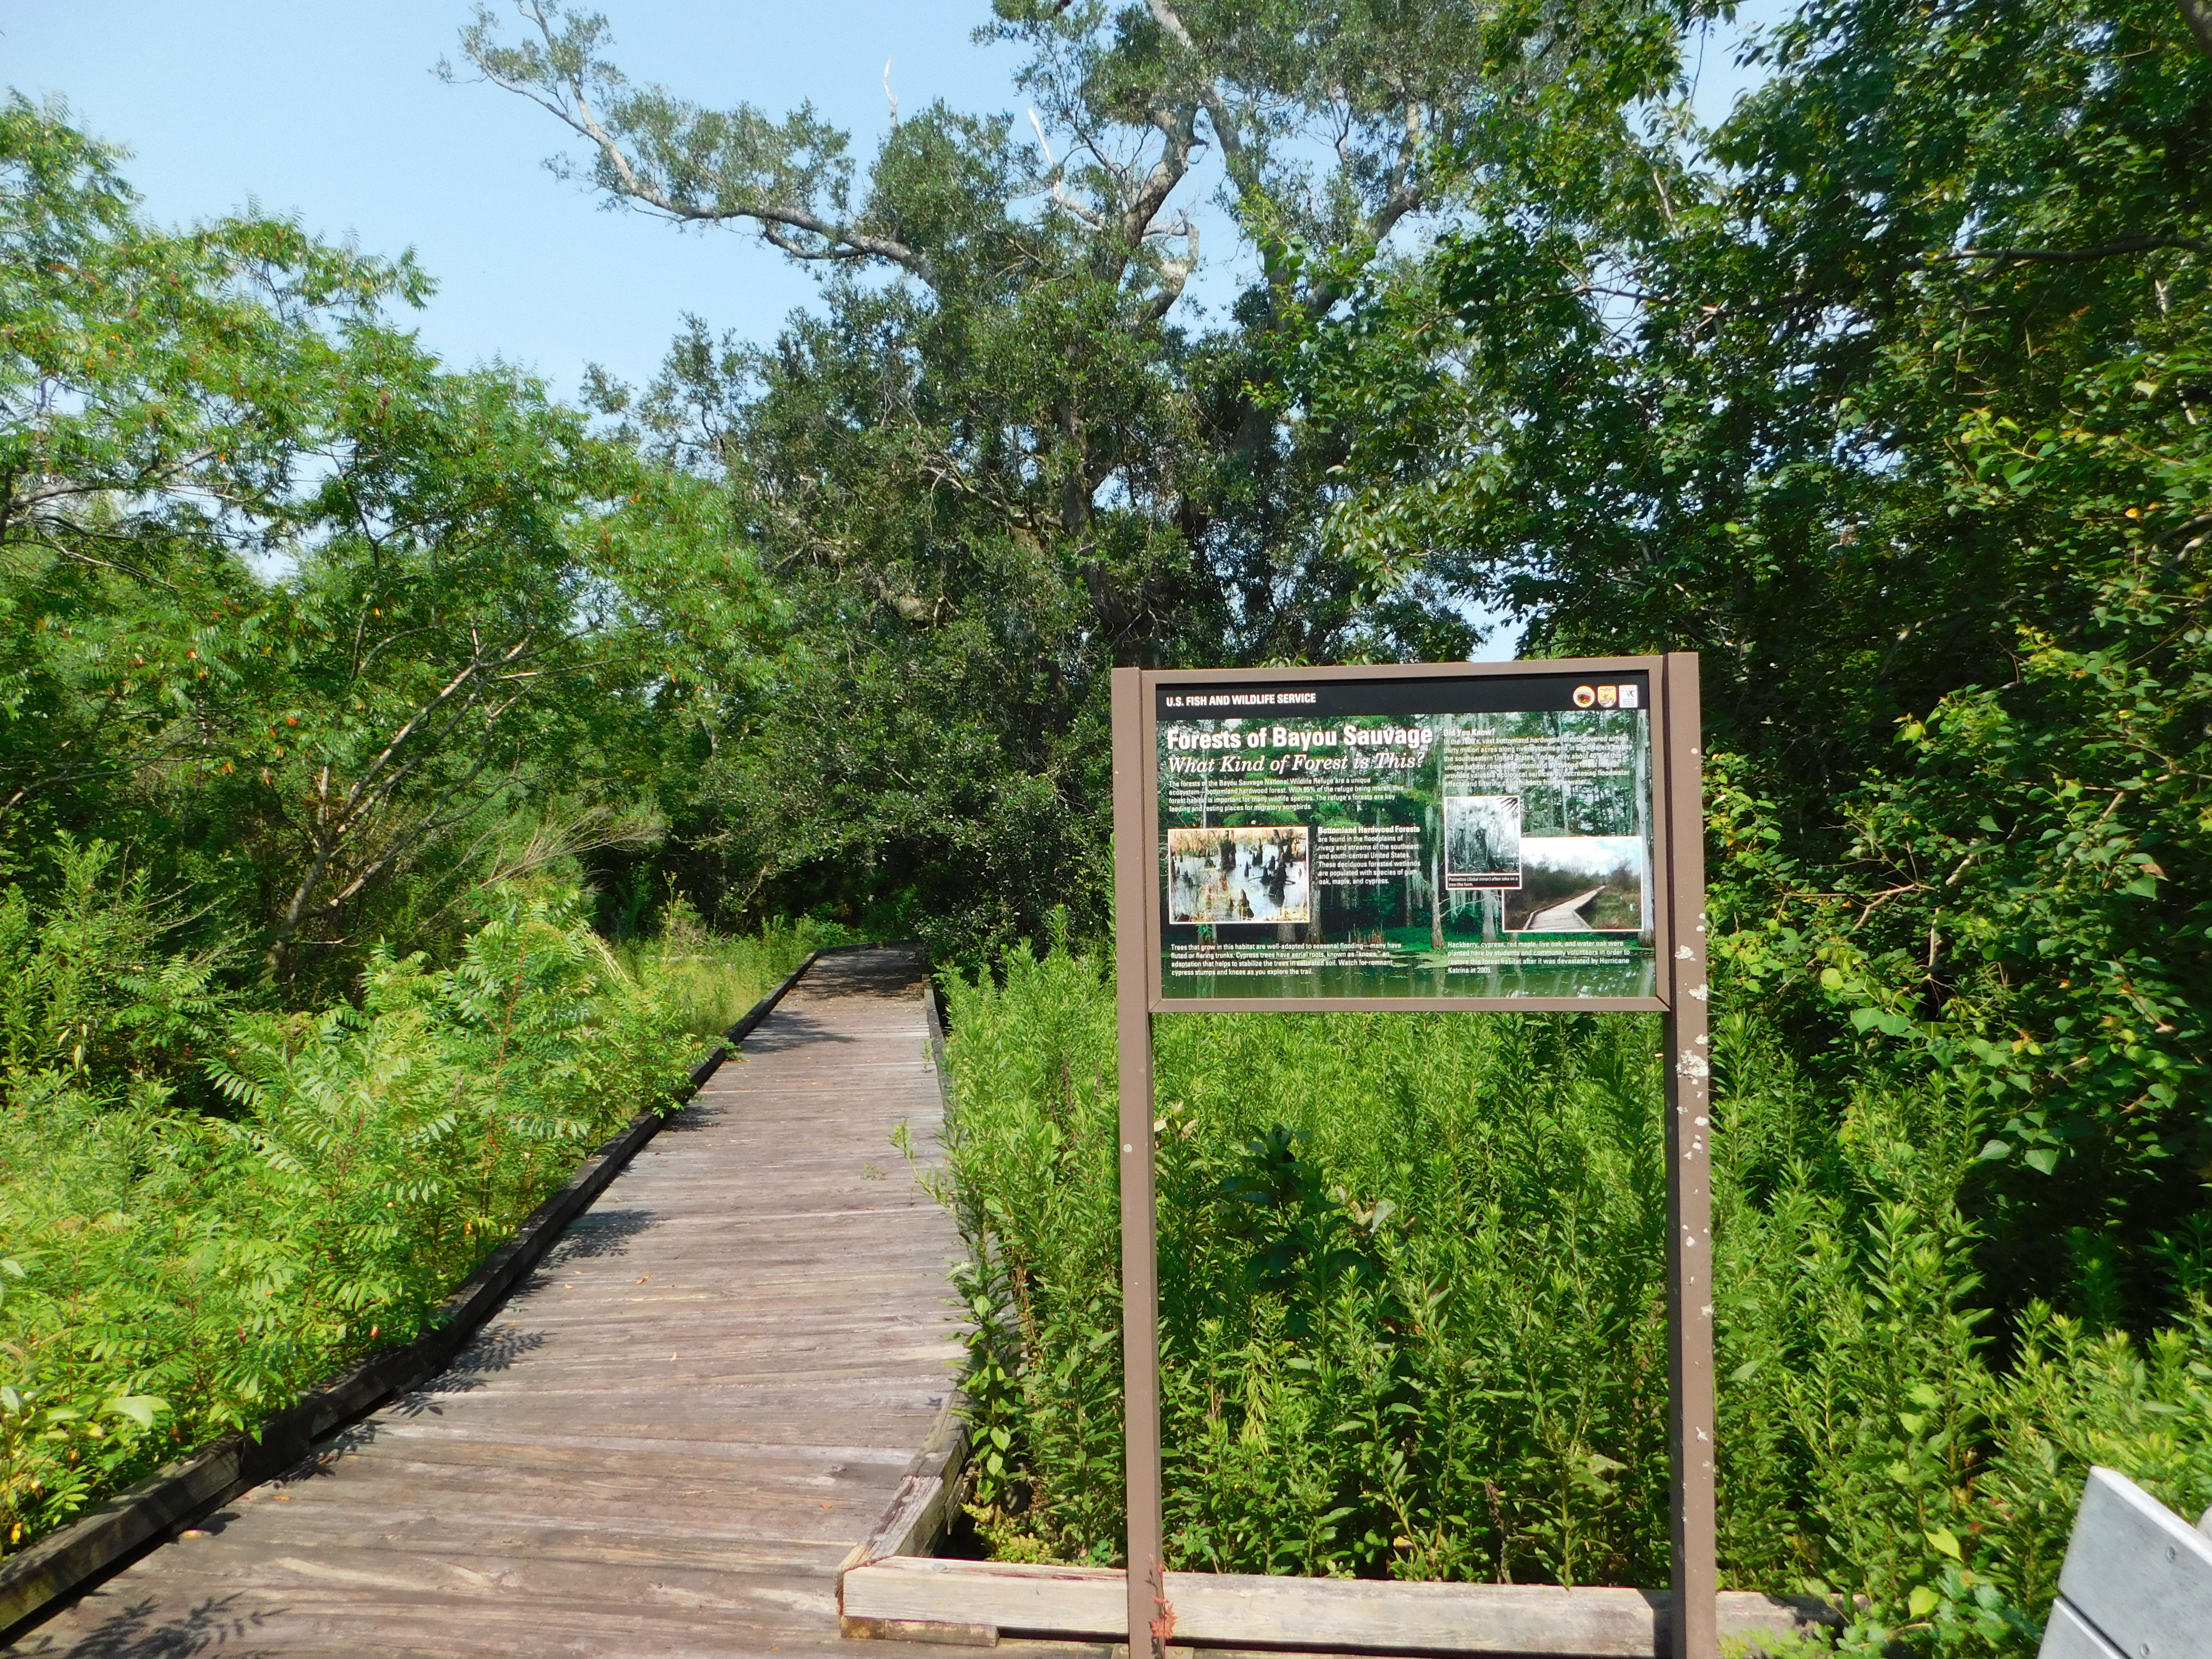 Interpretive sign along boardwalk trail in forest